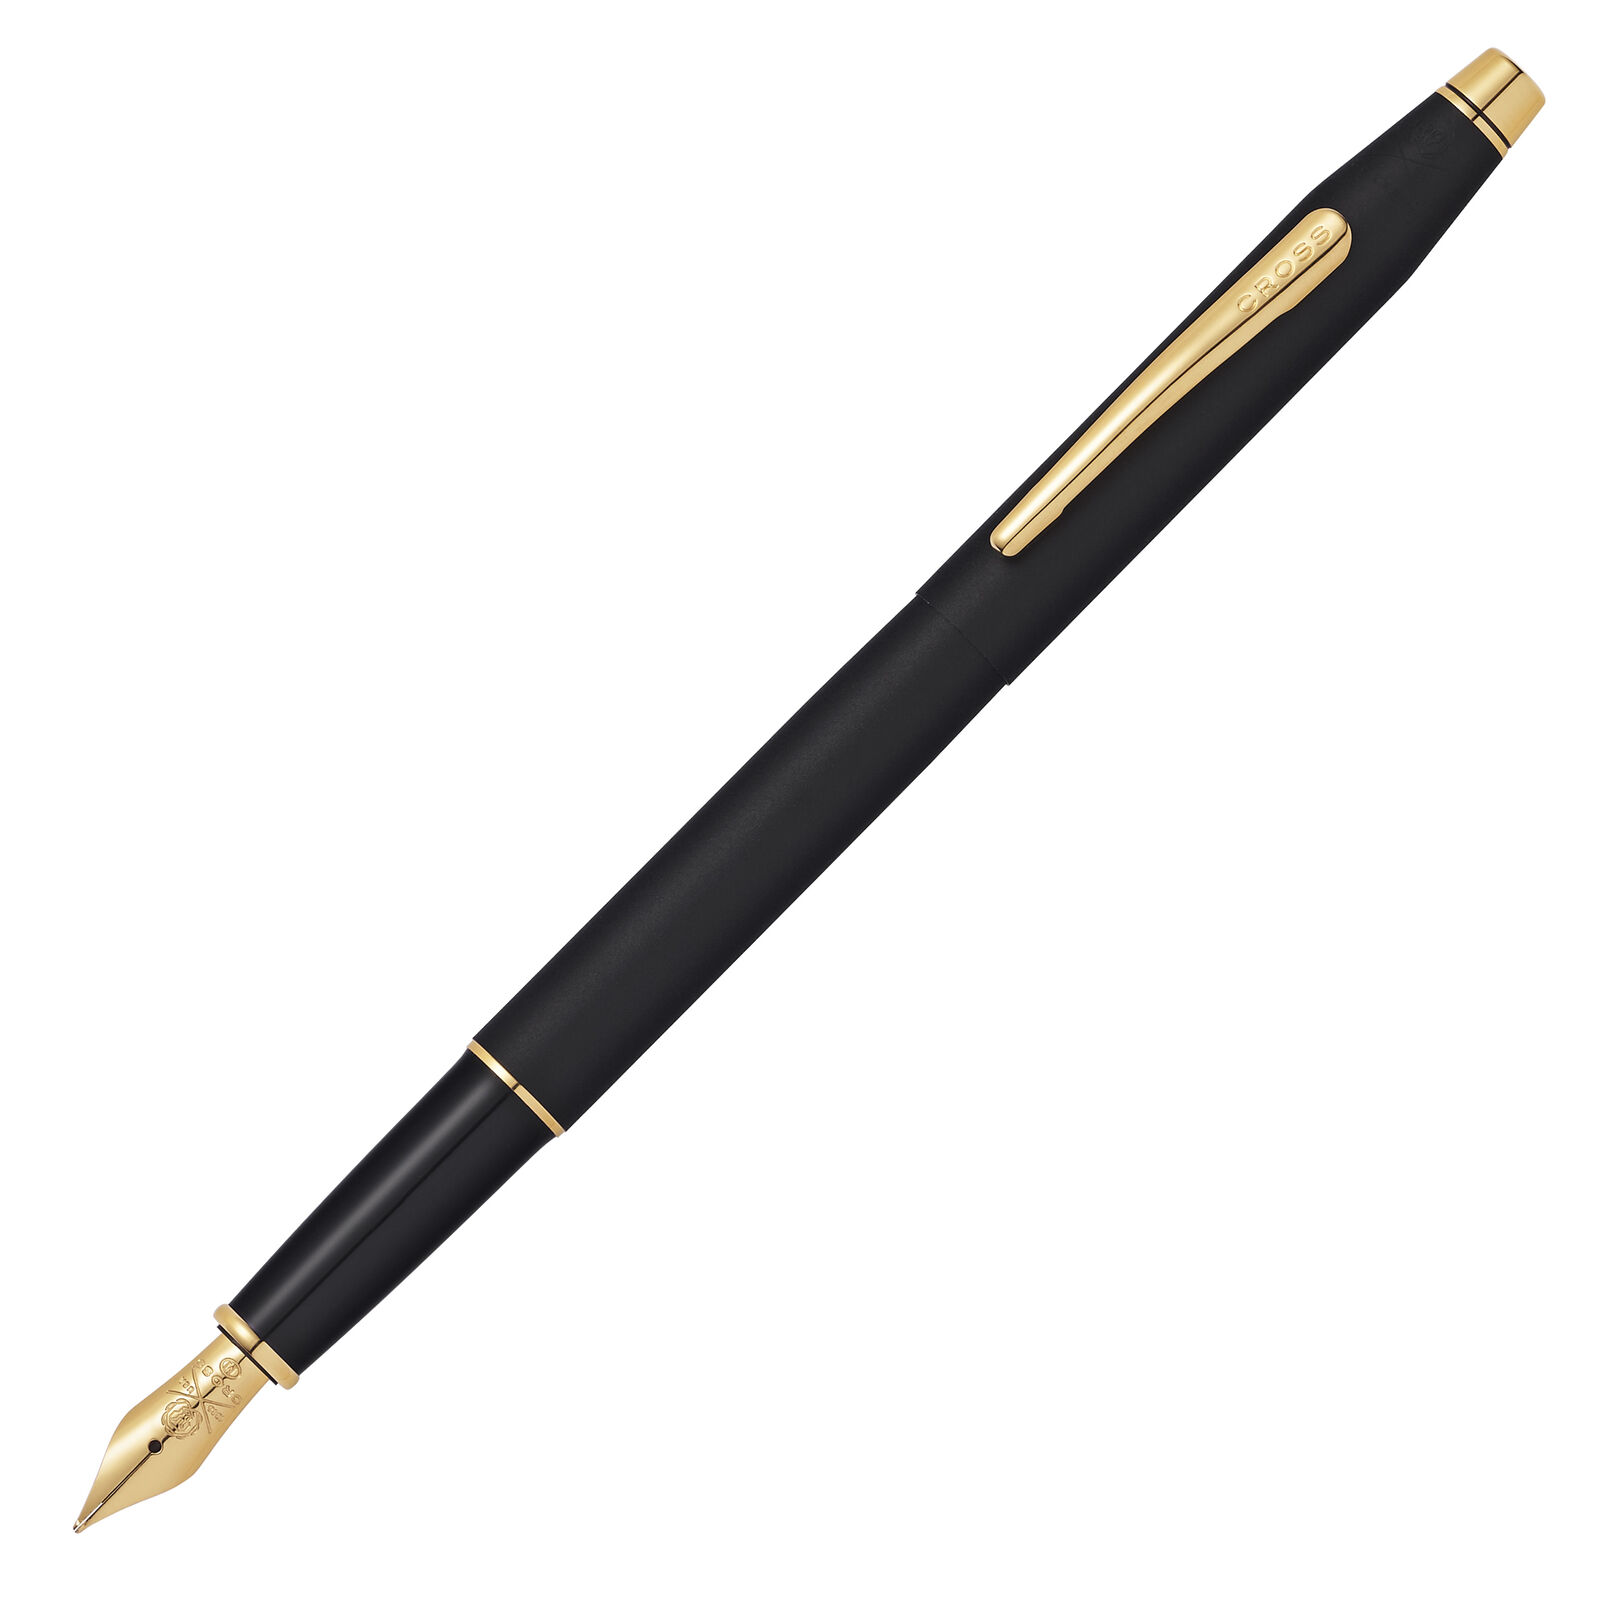 Cross Classic Century Fountain Pen in Classic Black Gold Trim - Medium Point